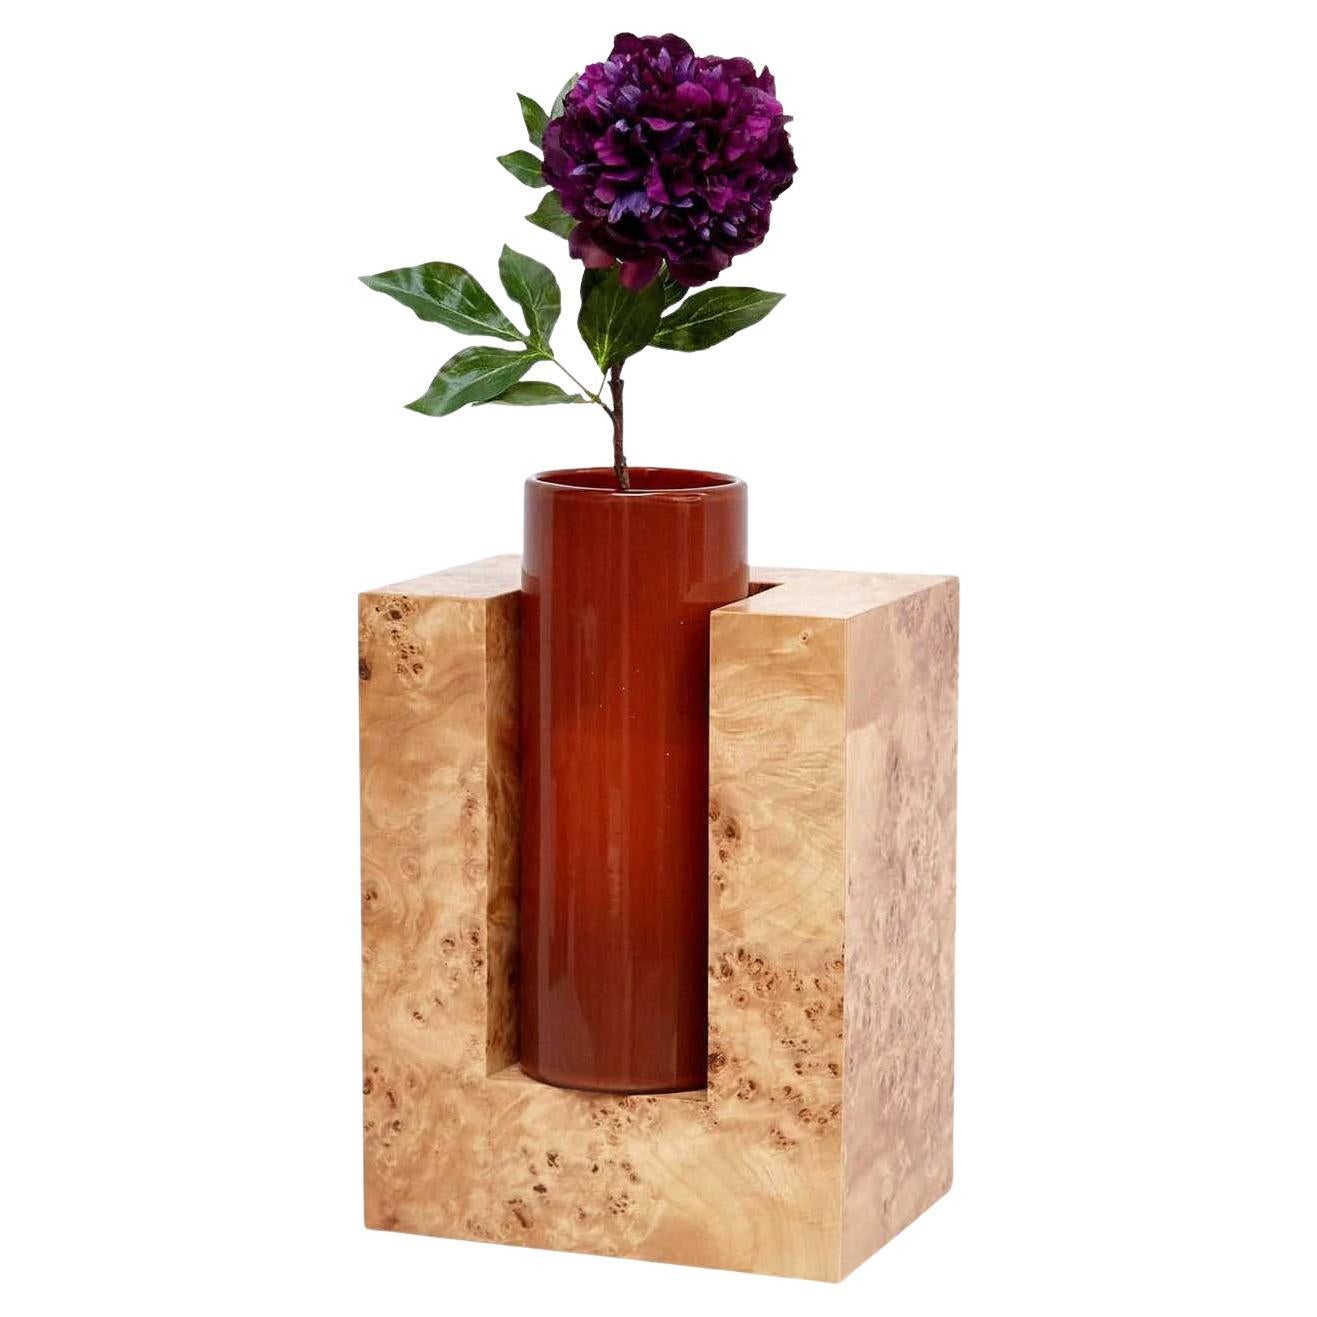 Ettore Sottsass Y vase en bois et verre de Murano pour fleurs, édition limitée